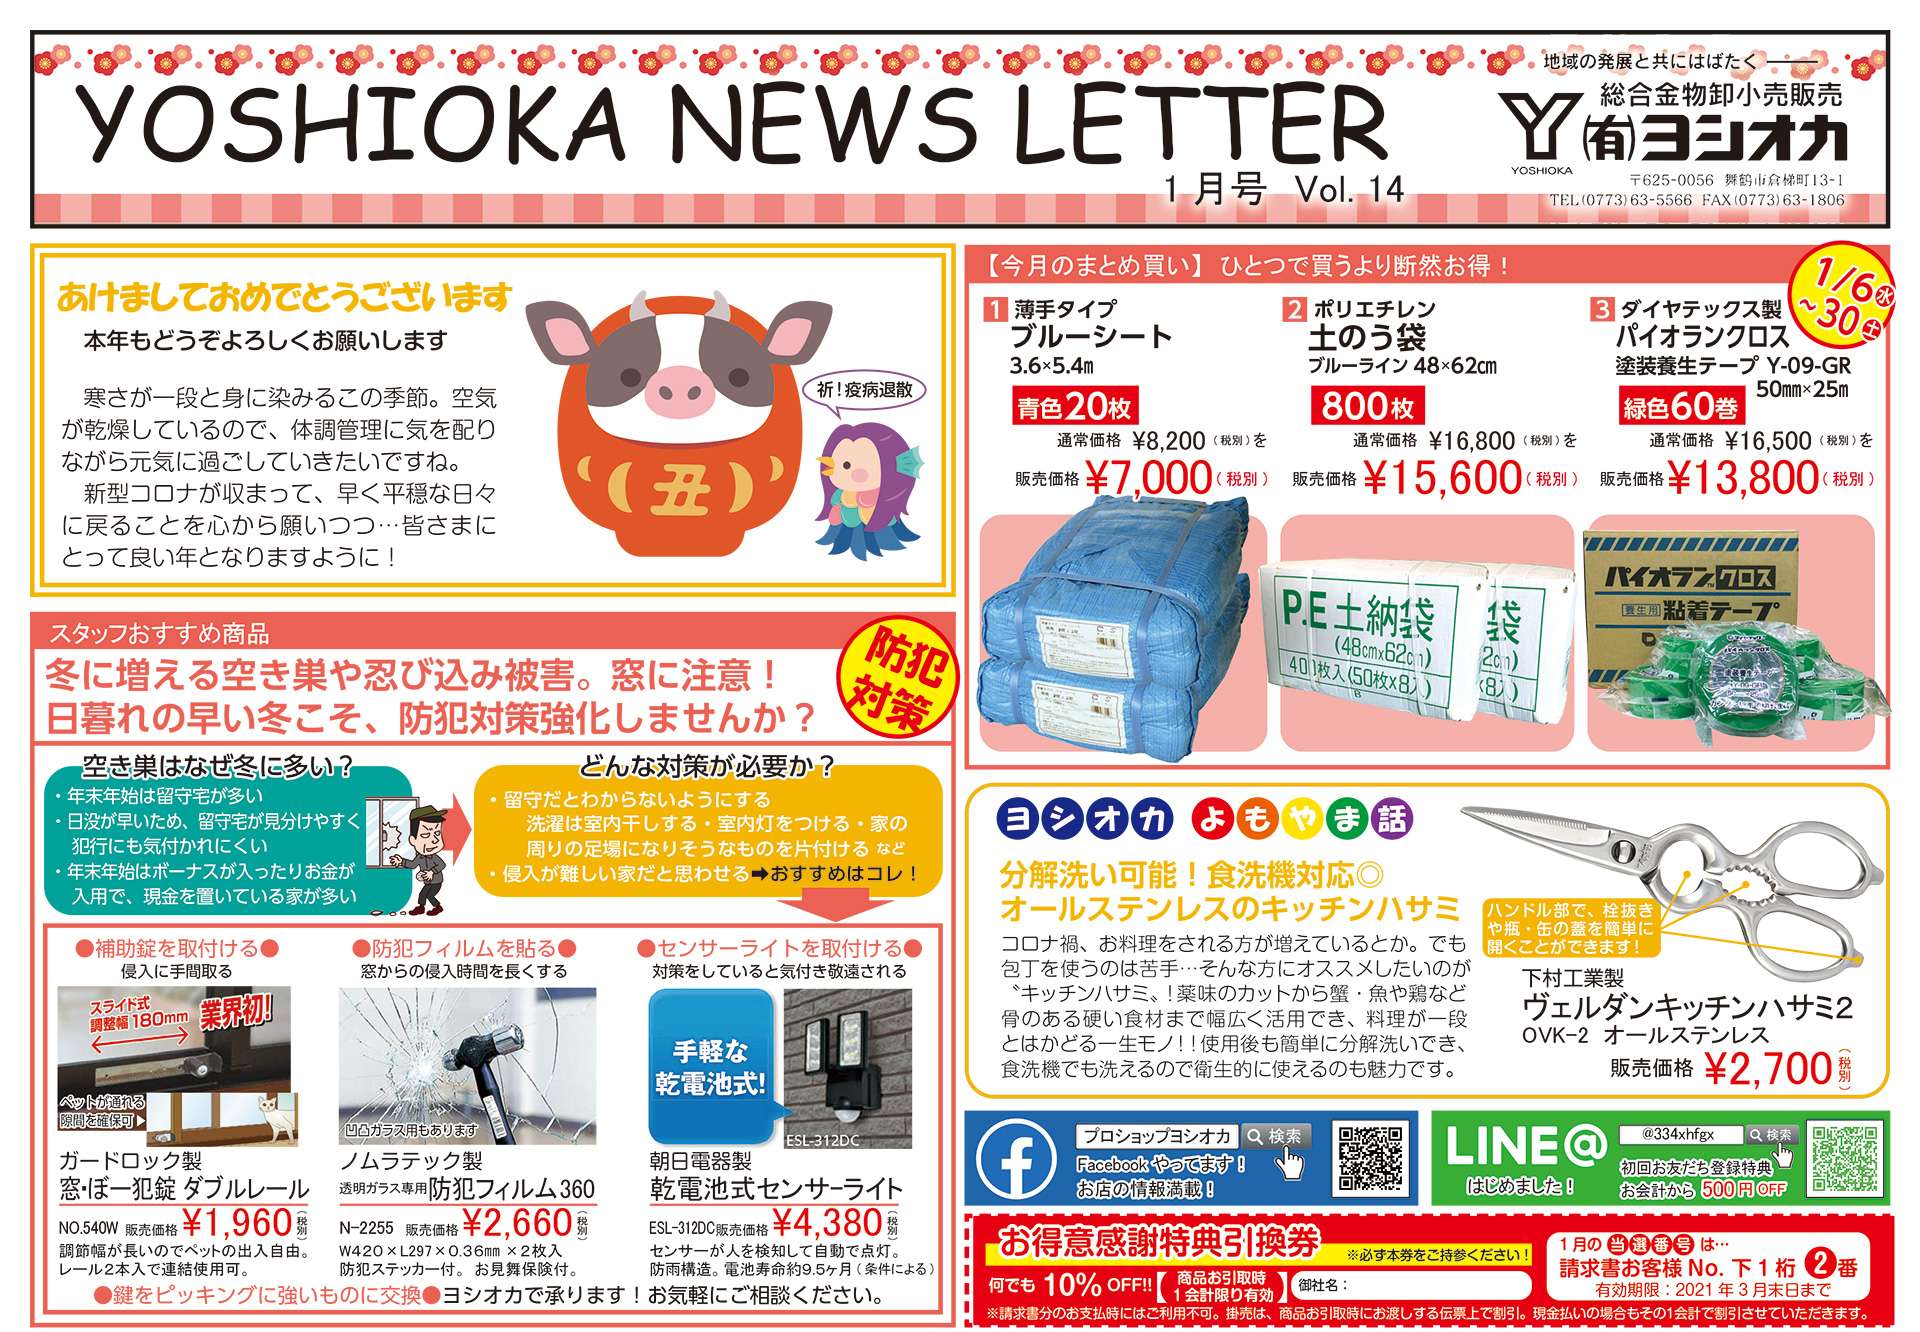 YOSHIOKA NEWS LETTER  Vol.14